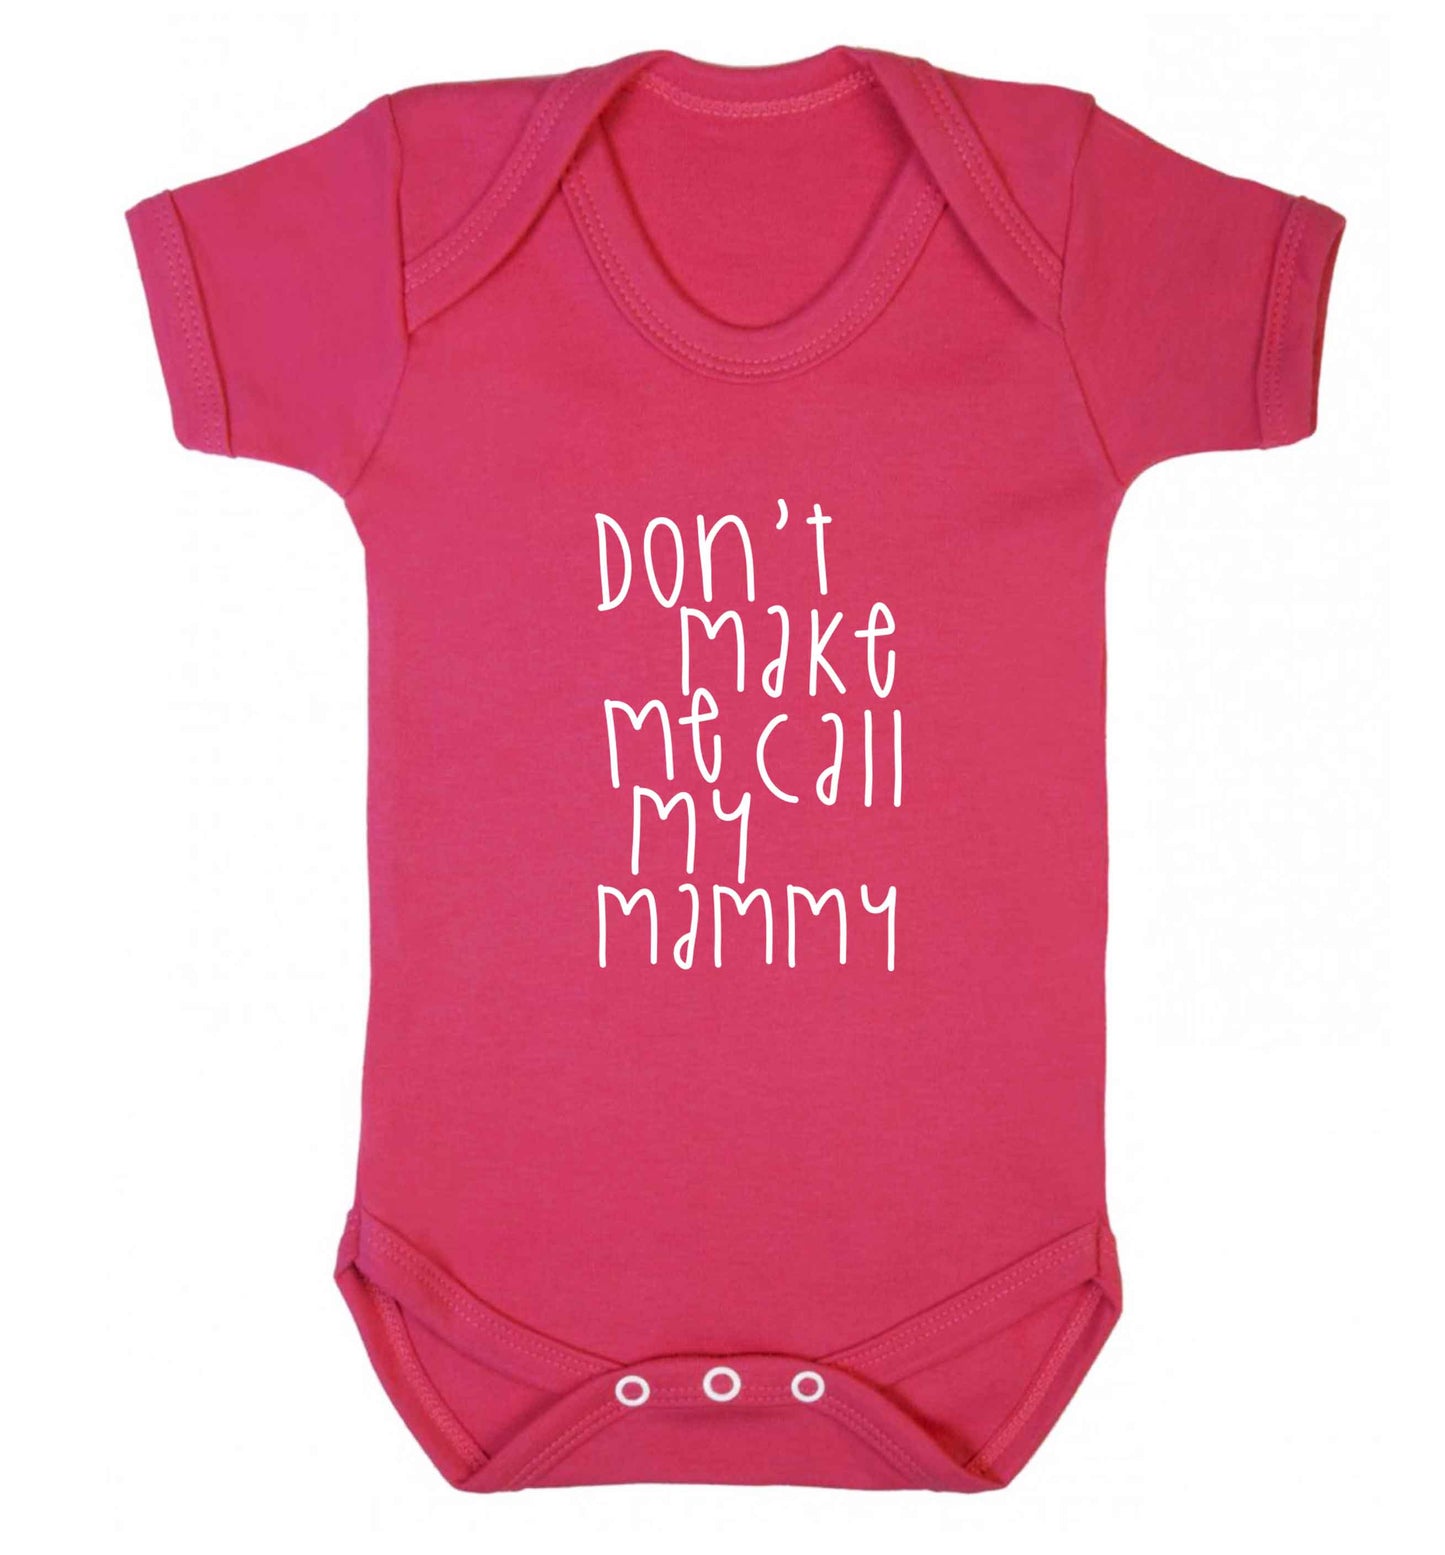 Don't make me call my mammy baby vest dark pink 18-24 months